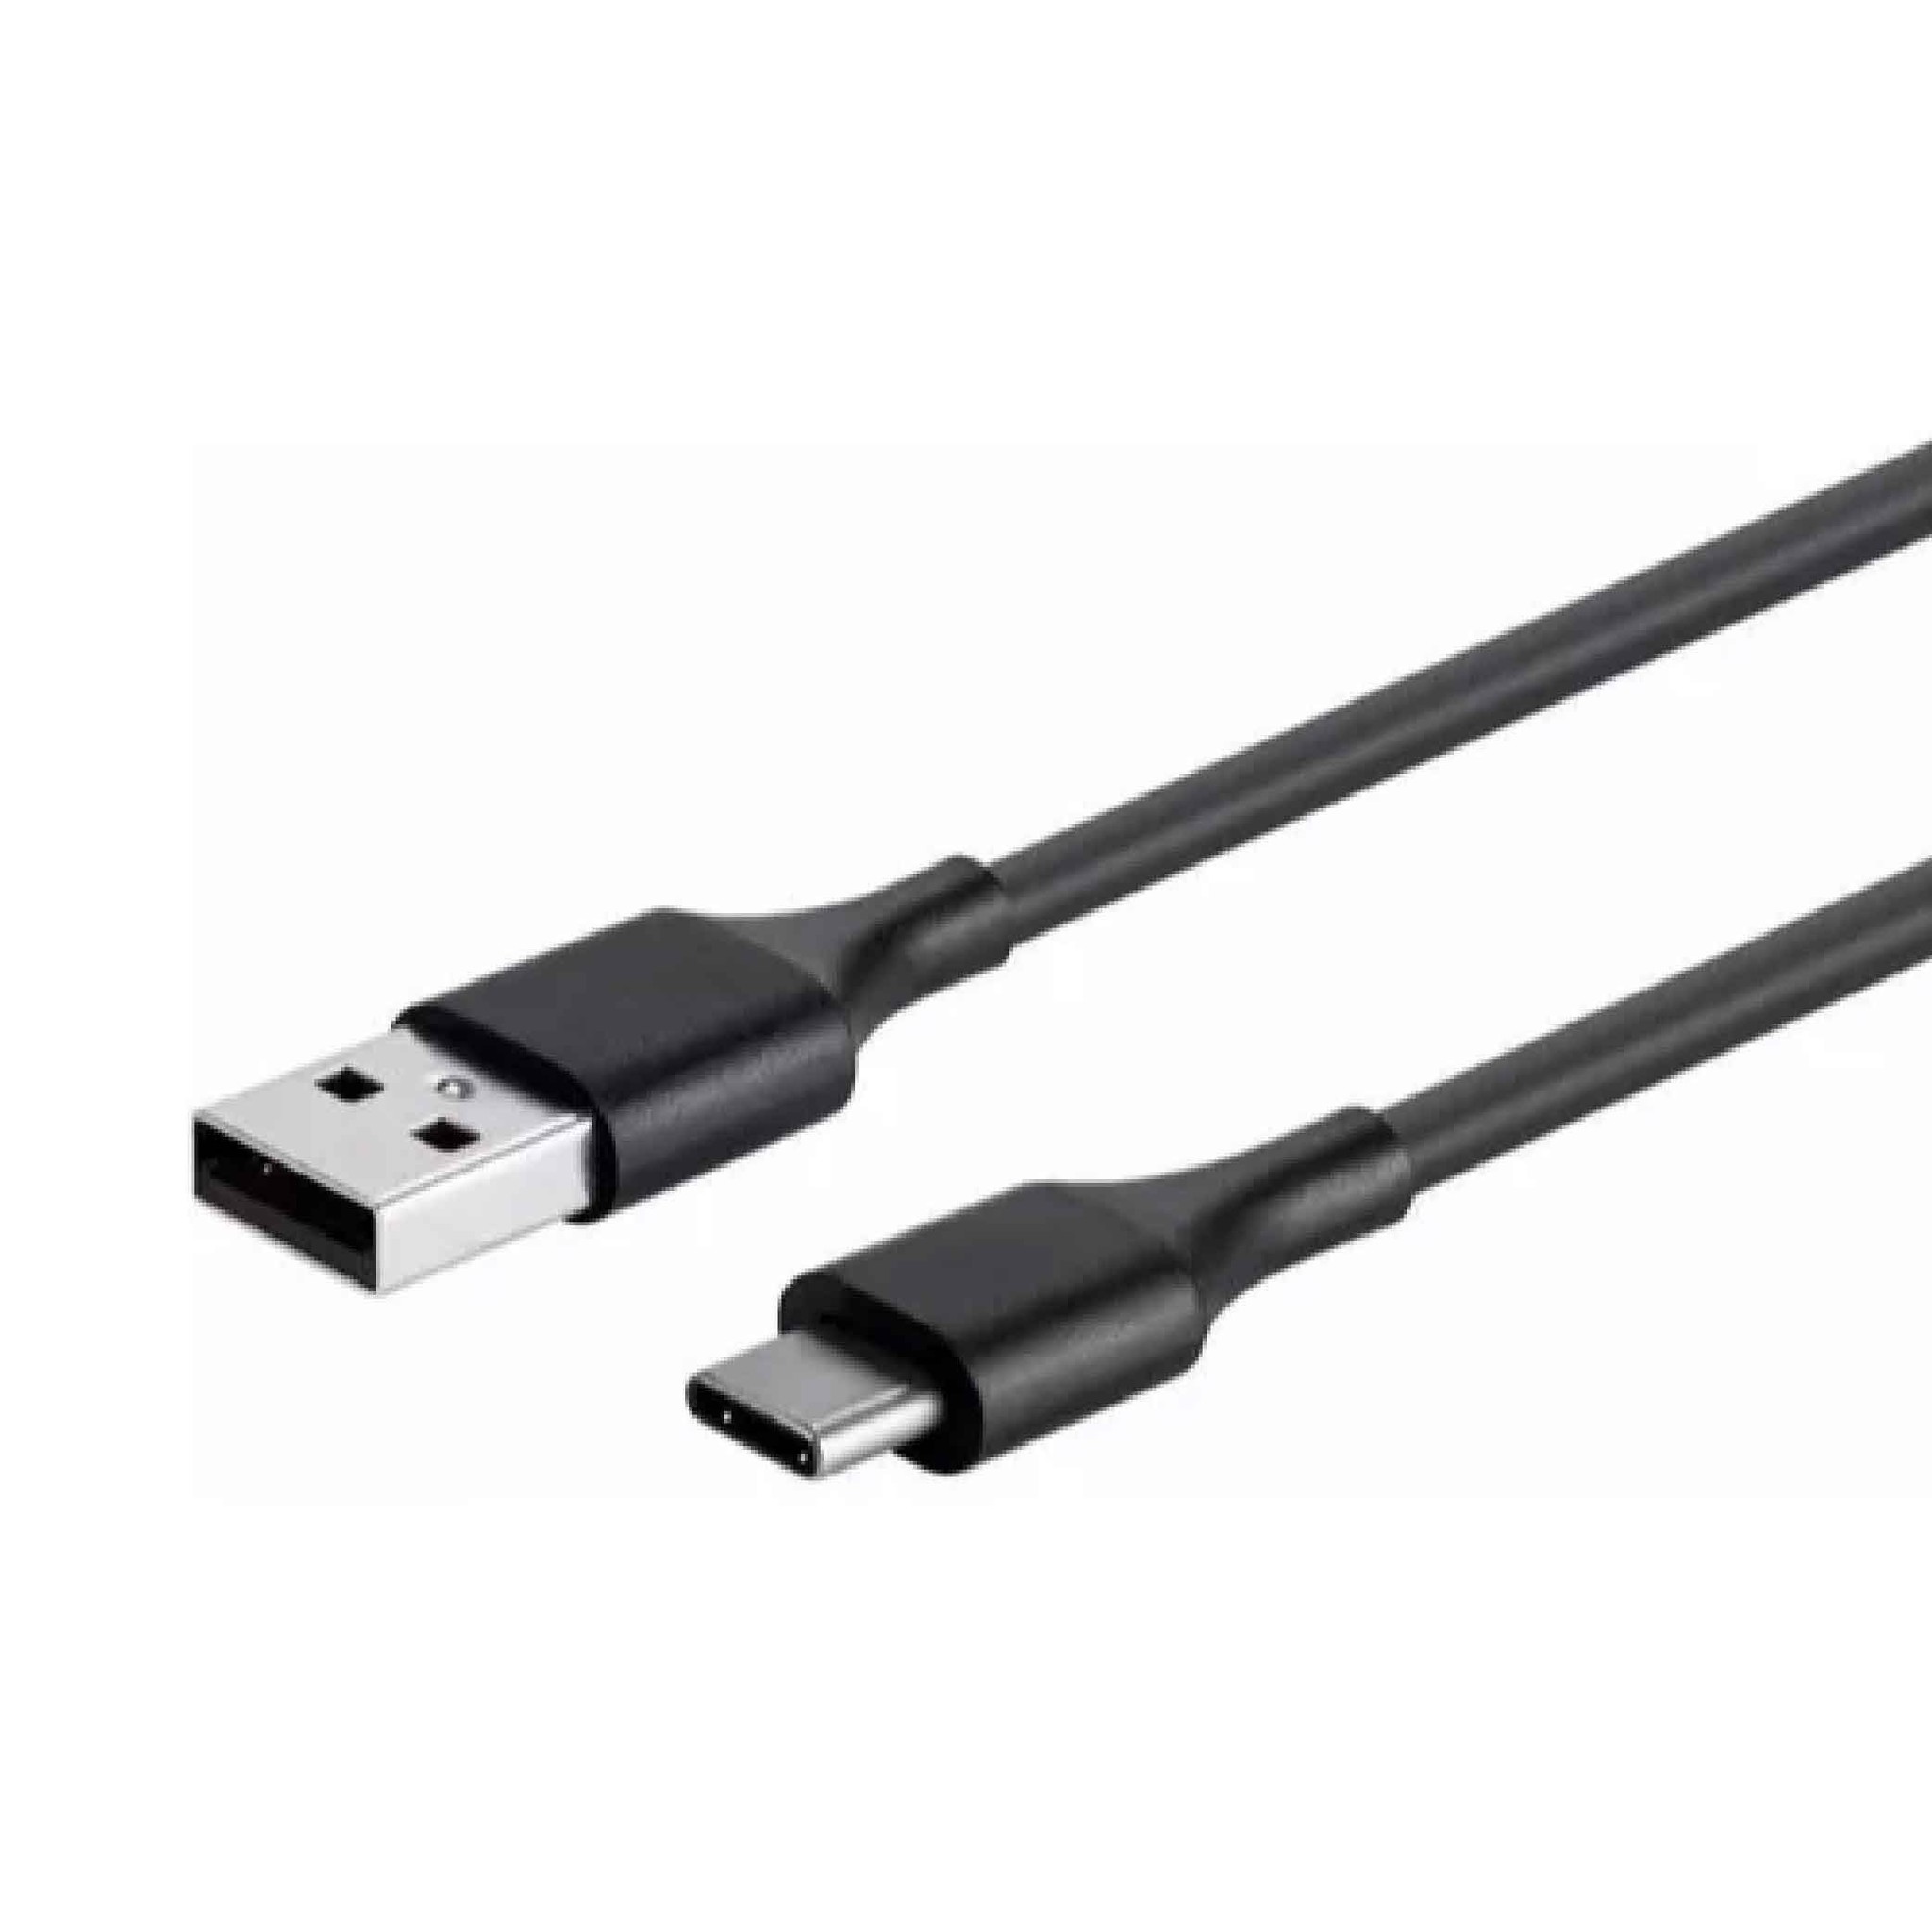 Кабель питания type c. USB Type-c 3.1 провода. USB 2.0 на USB Type c. Юсби тайп си 3.2. Lenovo USB-C Cable 1m.